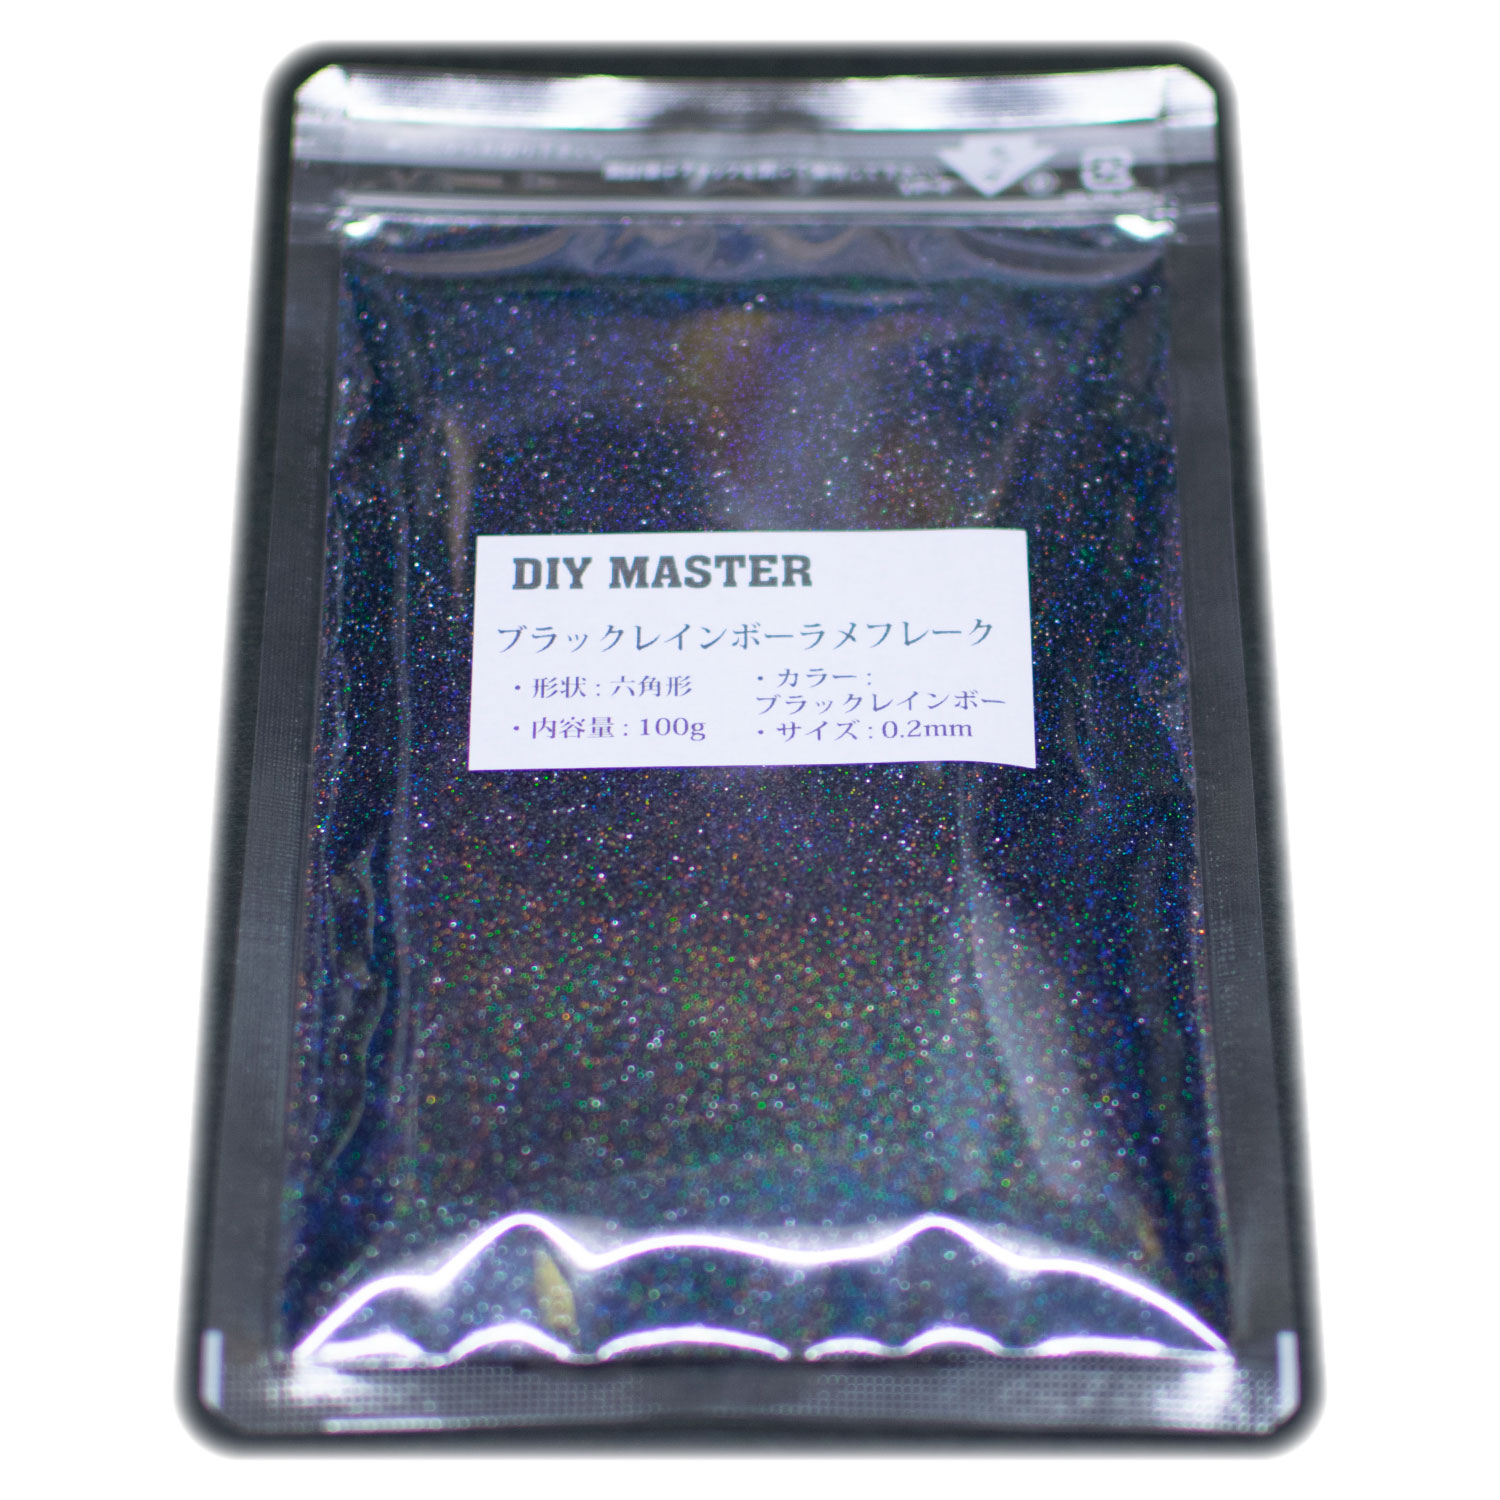 美しい DIY MASTER ブラックレインボー ラメ フレーク 0.6mm 50g